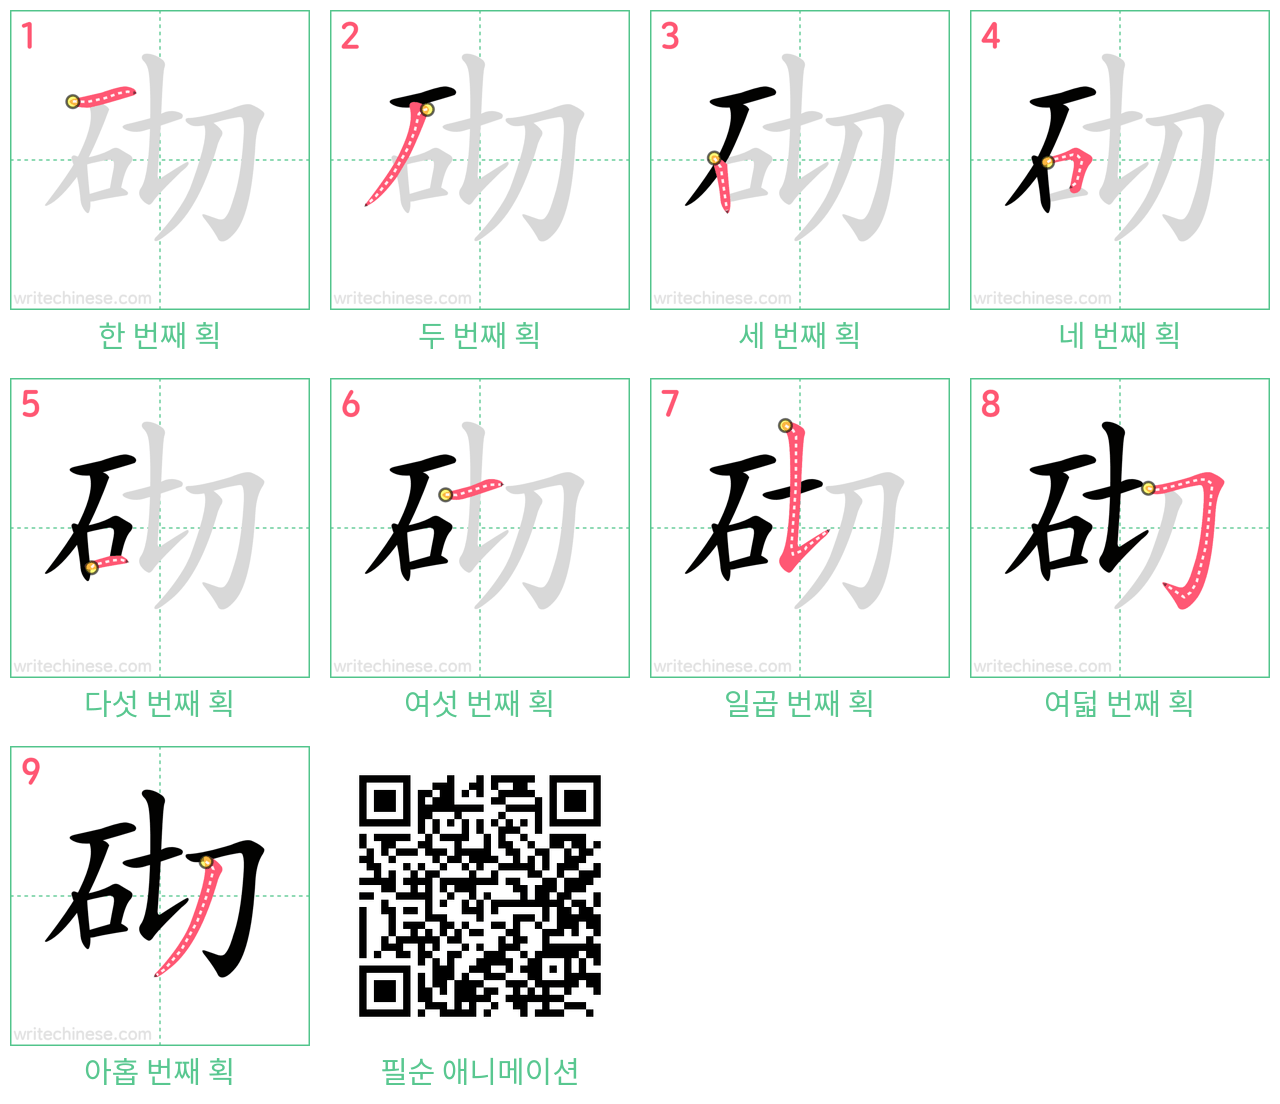 砌 step-by-step stroke order diagrams